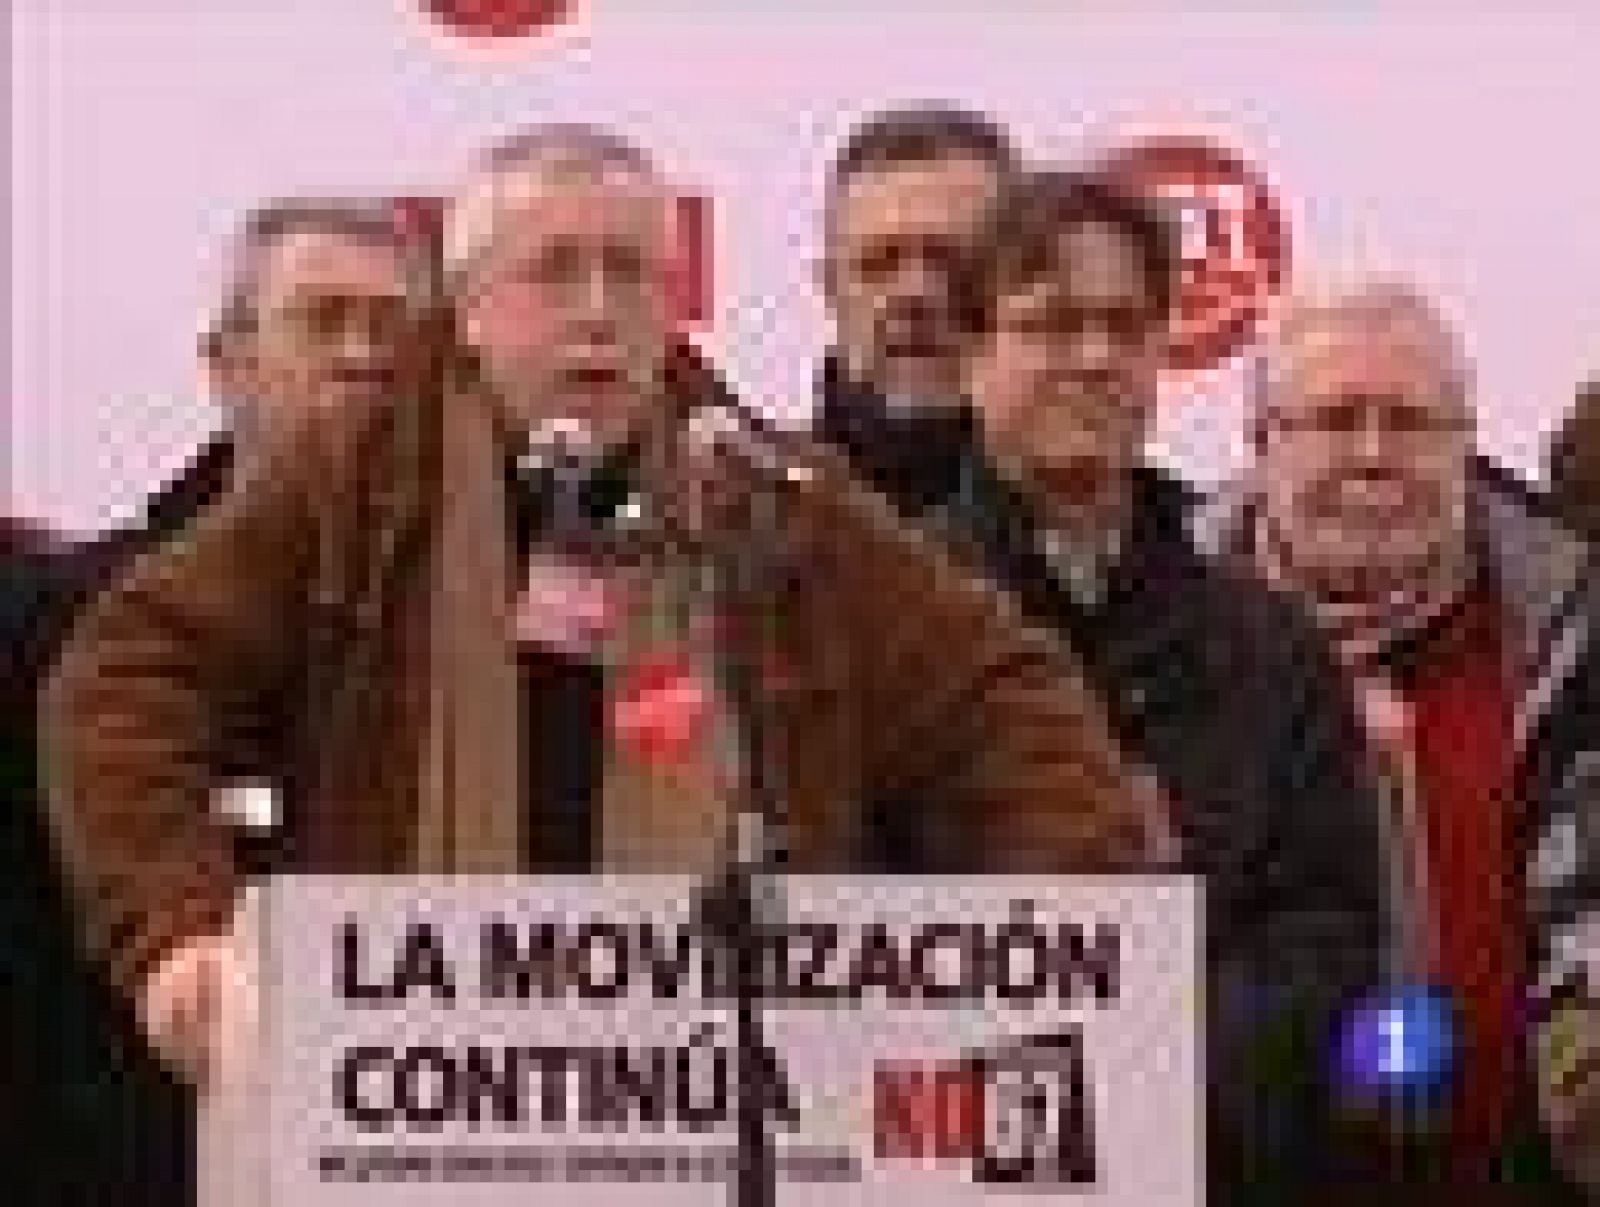  Los sindicatos anuncian una huelga general en enero